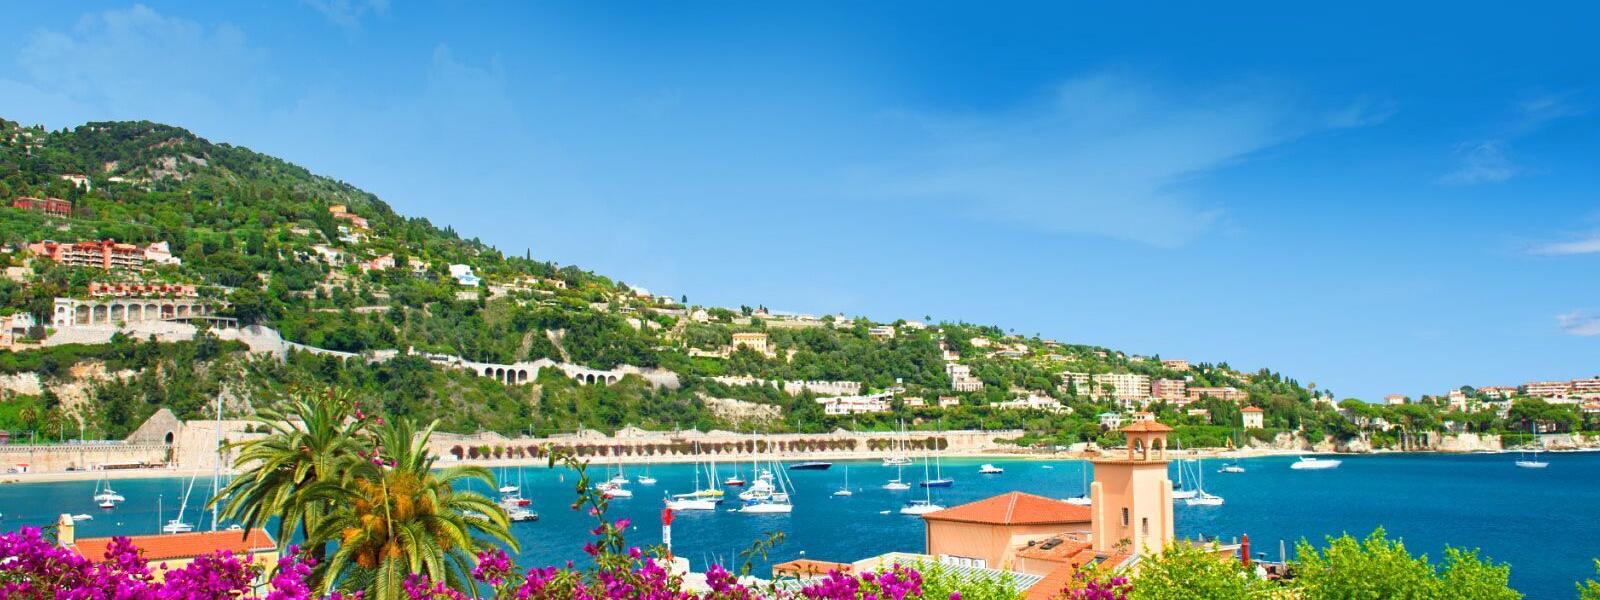 Ferienwohnung und Ferienhaus in Toulon - e-domizil